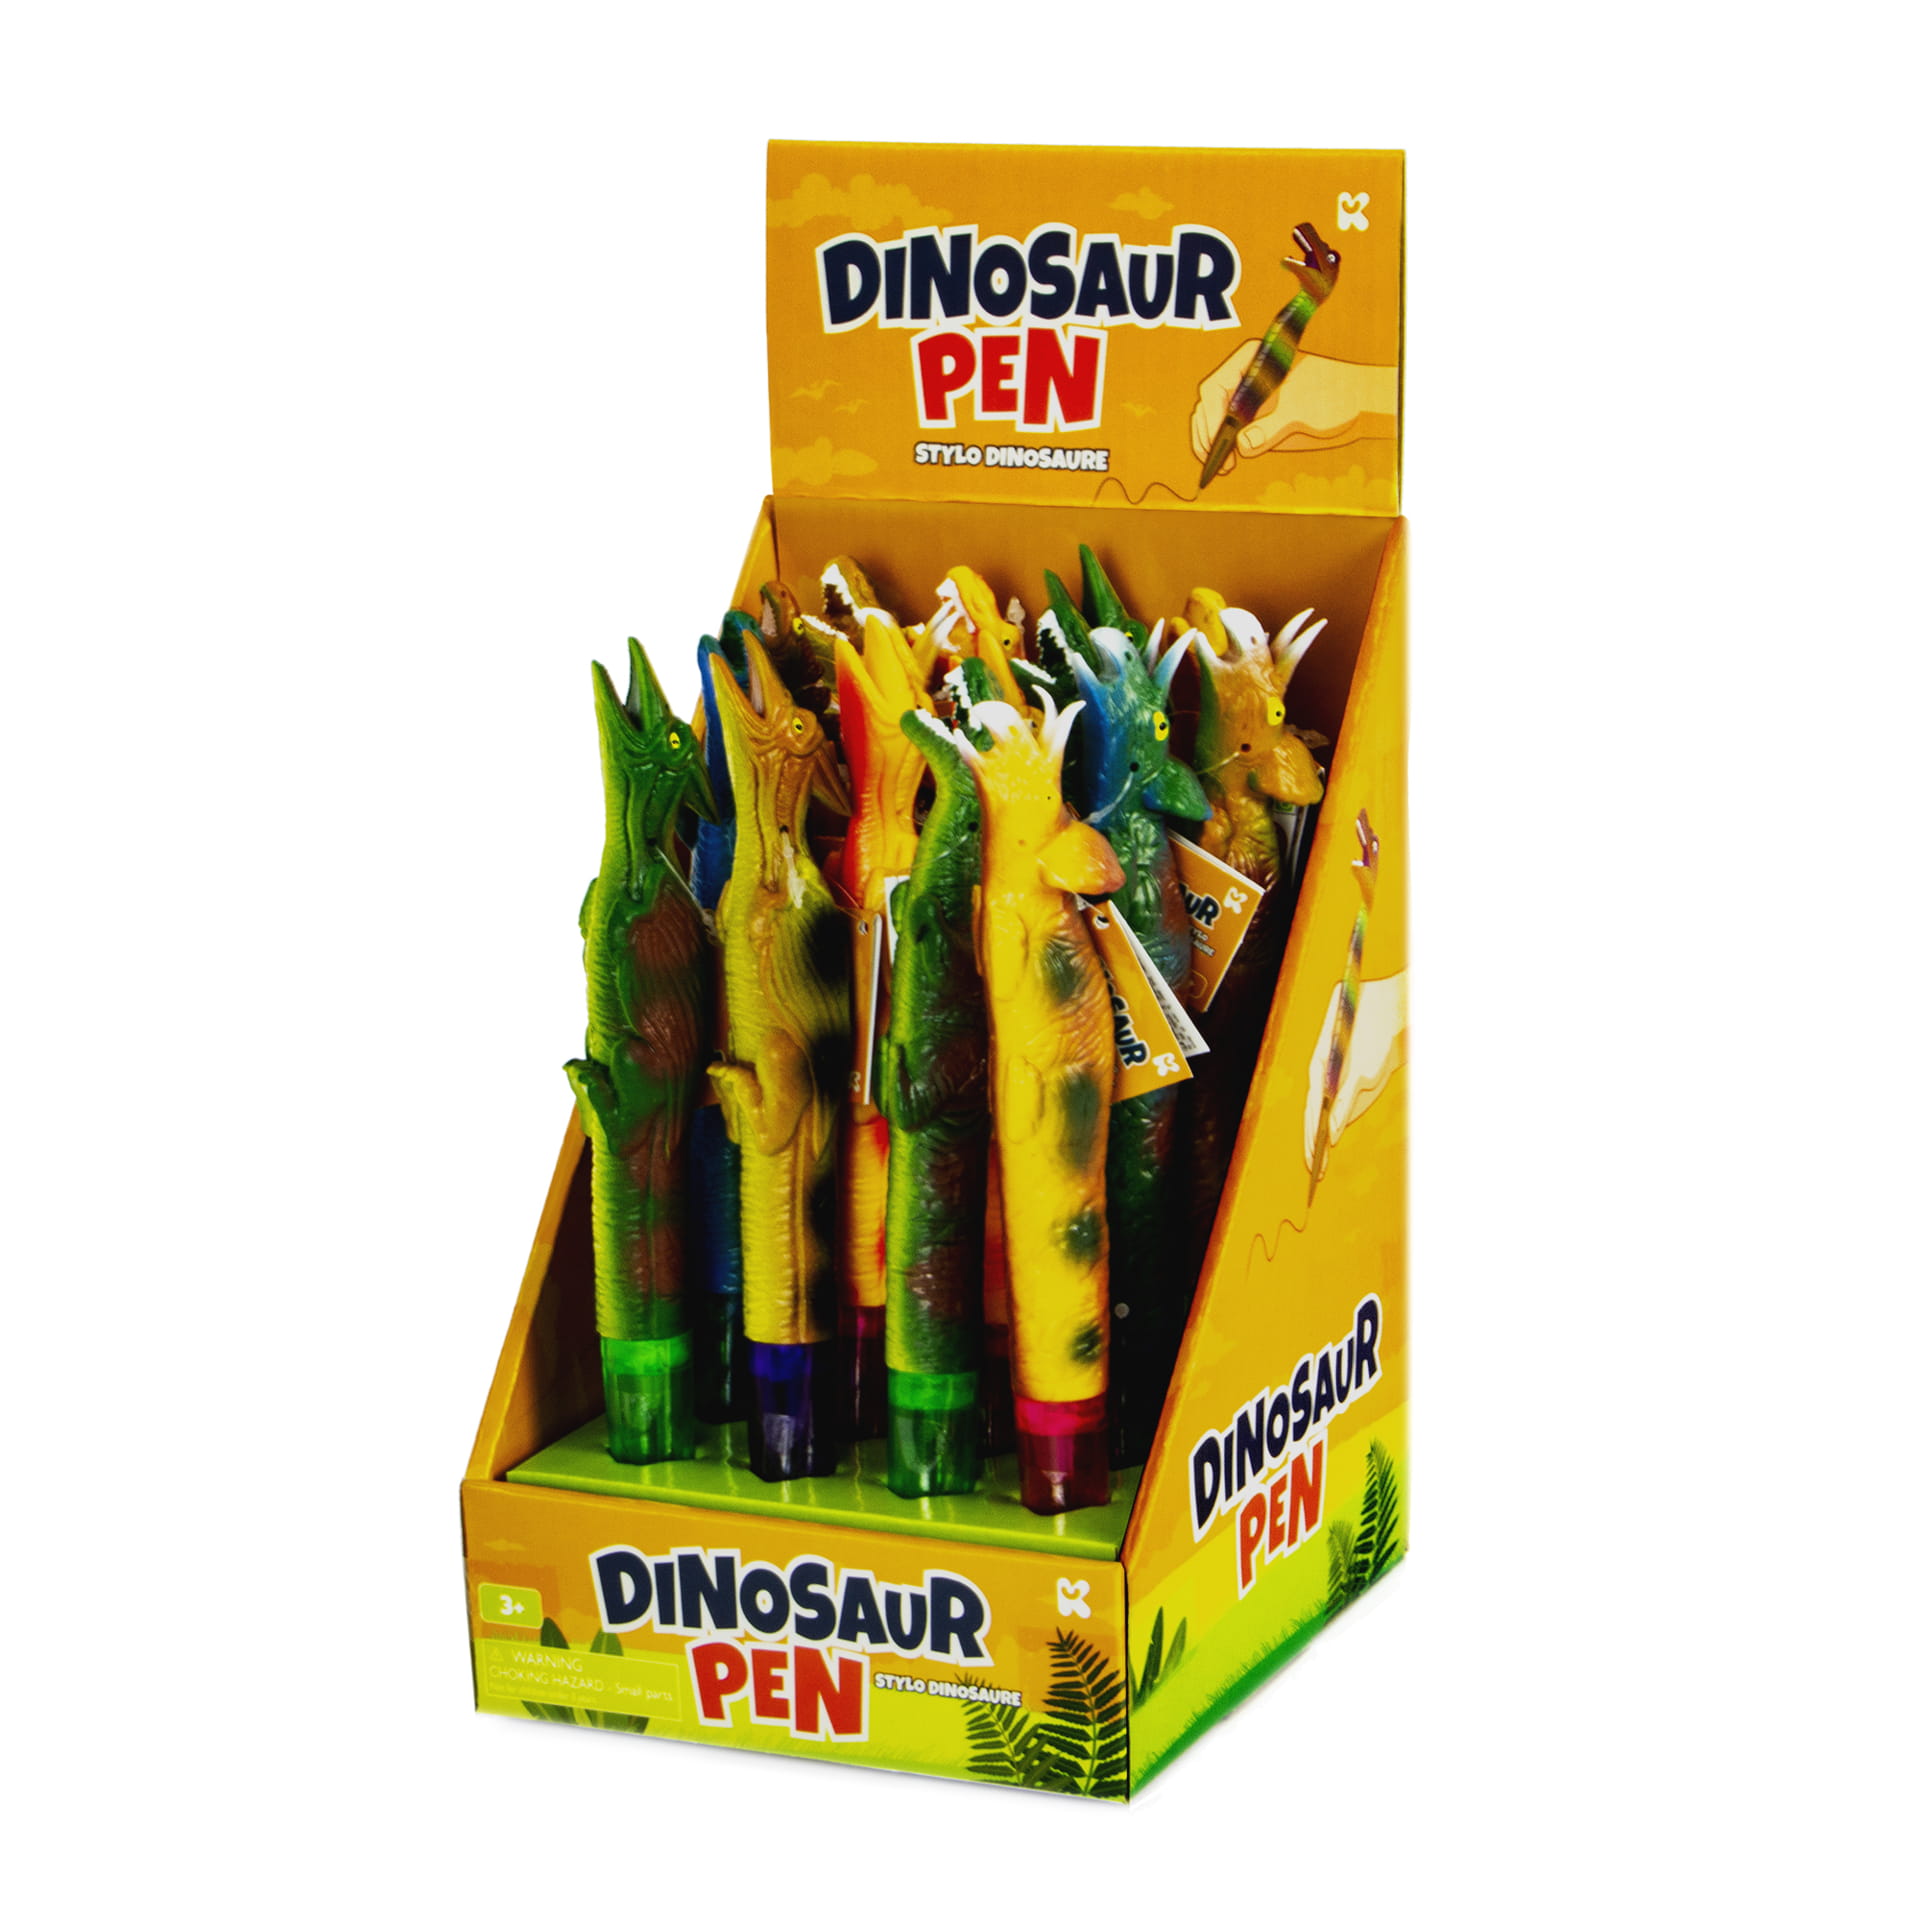 Dinosaur Pens